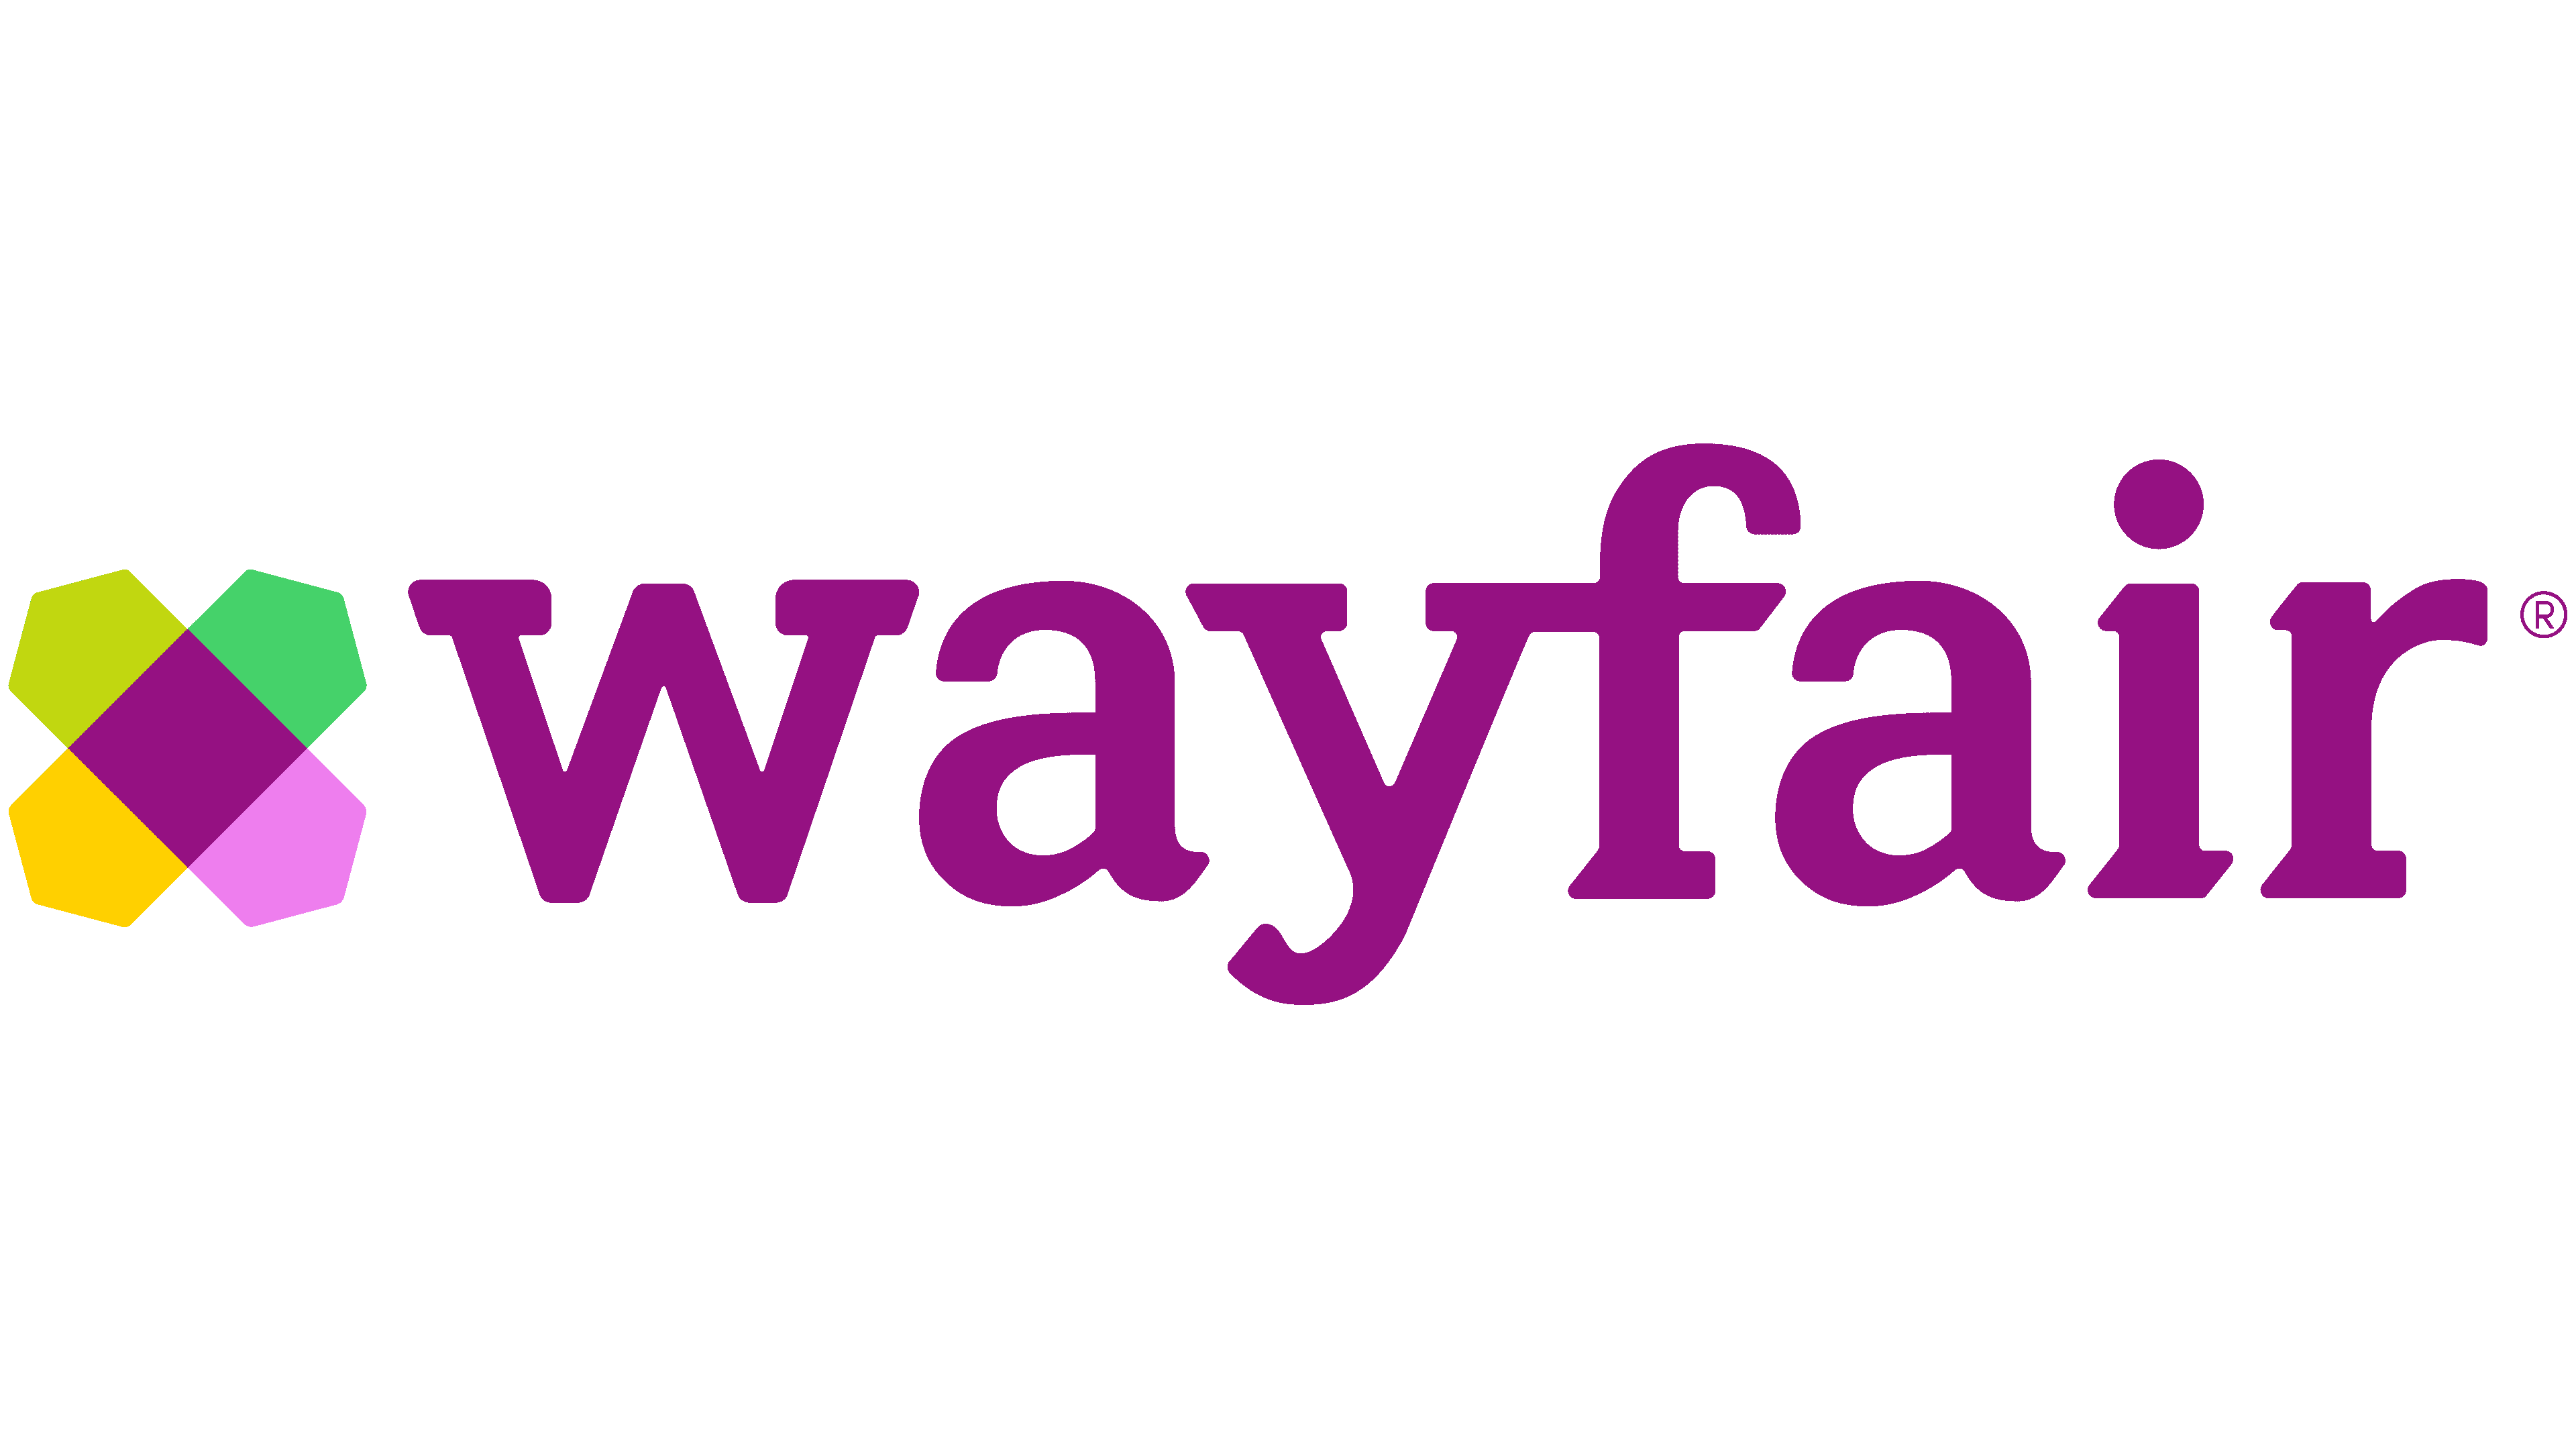 wayfair.com 徽标